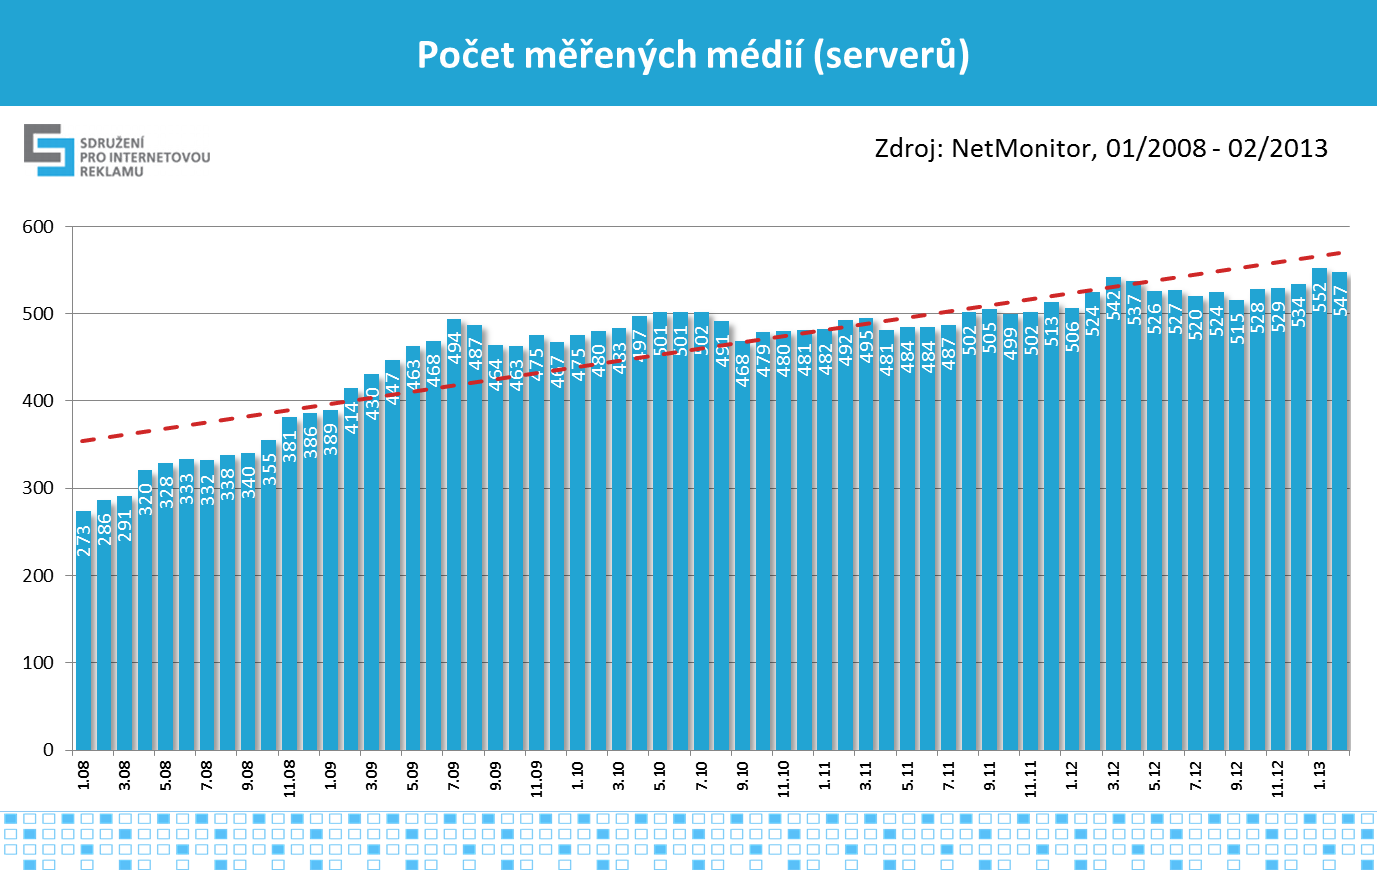 4 Graf č.5, zdroj: NetMonitor SPIR Mediaresearch & Gemius, 2/2013; ČSÚ 12/2011 Vývoj počtu měřených médií V grafu č.6 je znázorněn vývoj počtu měřených internetových médií (serverů).